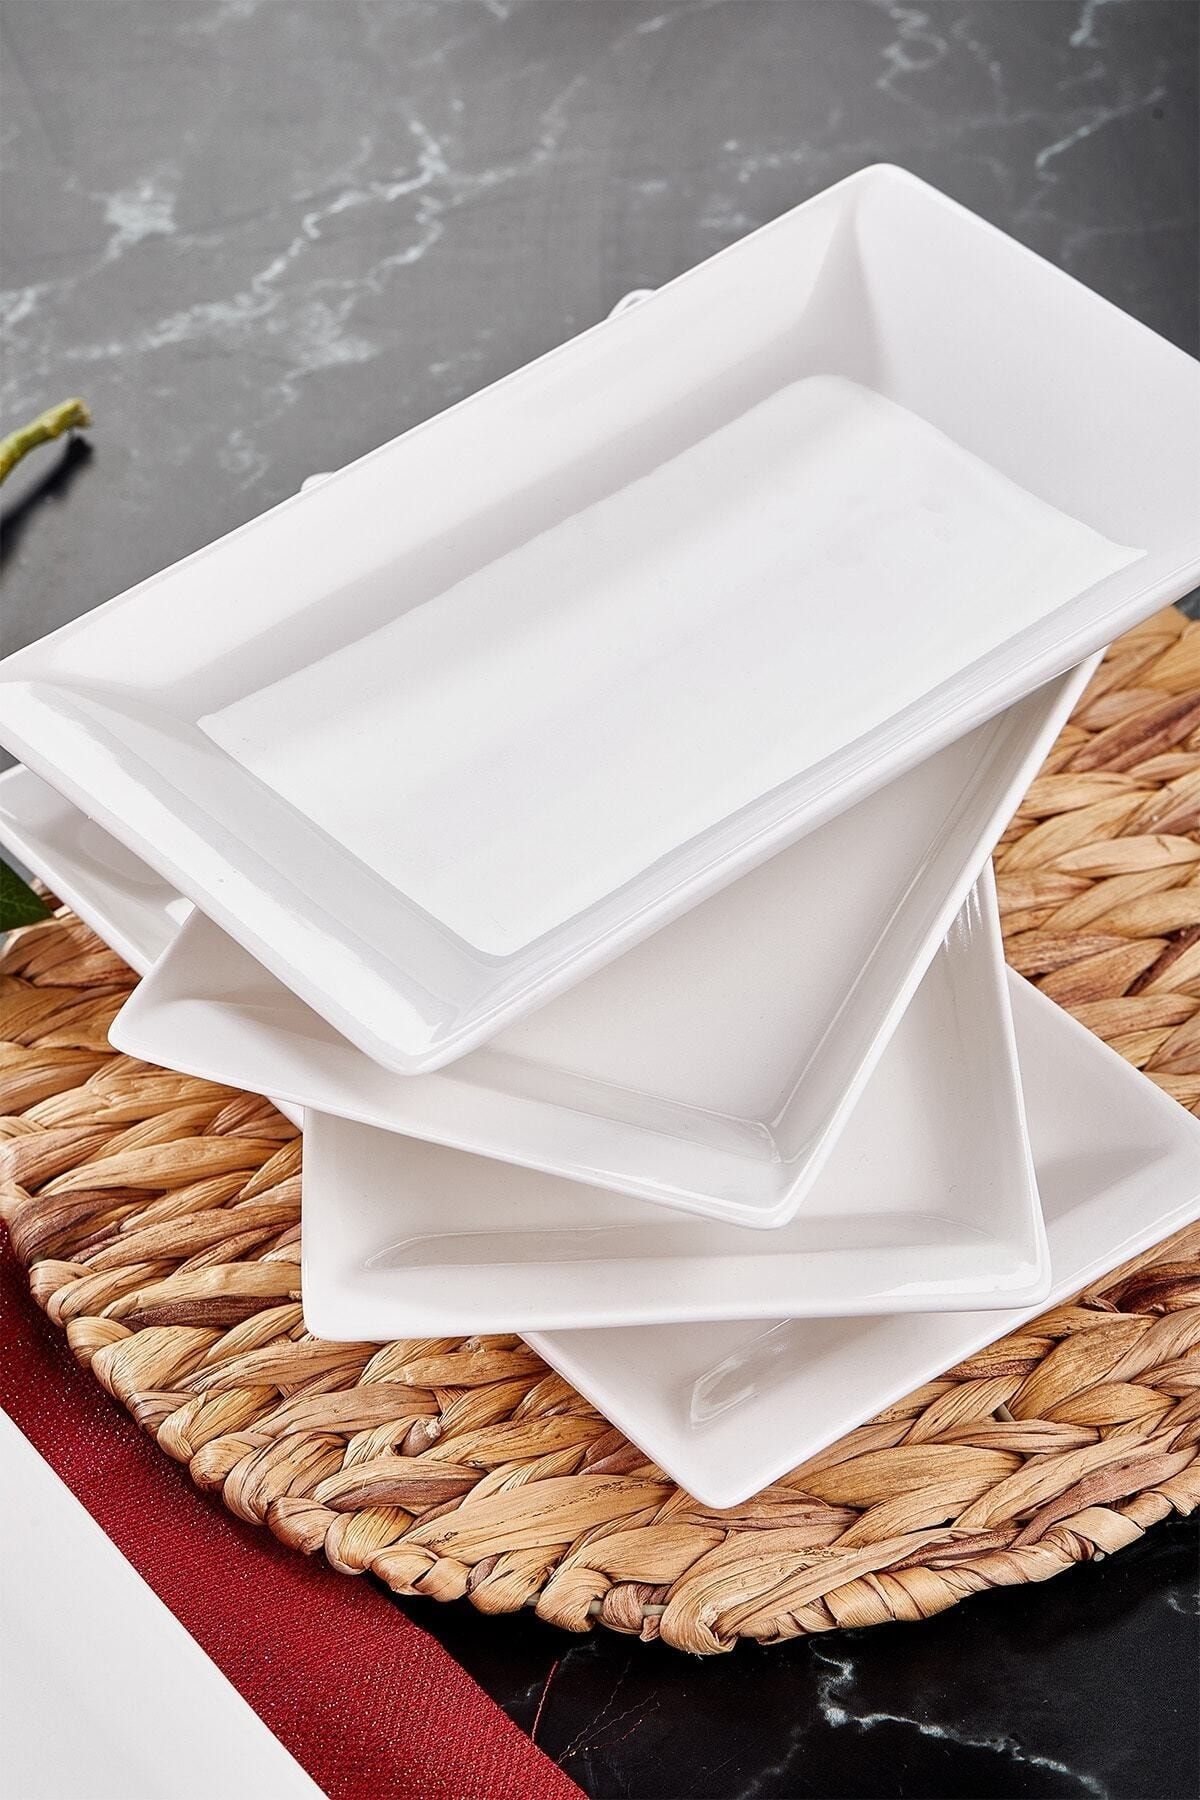 White Plastic Rectangular Platter